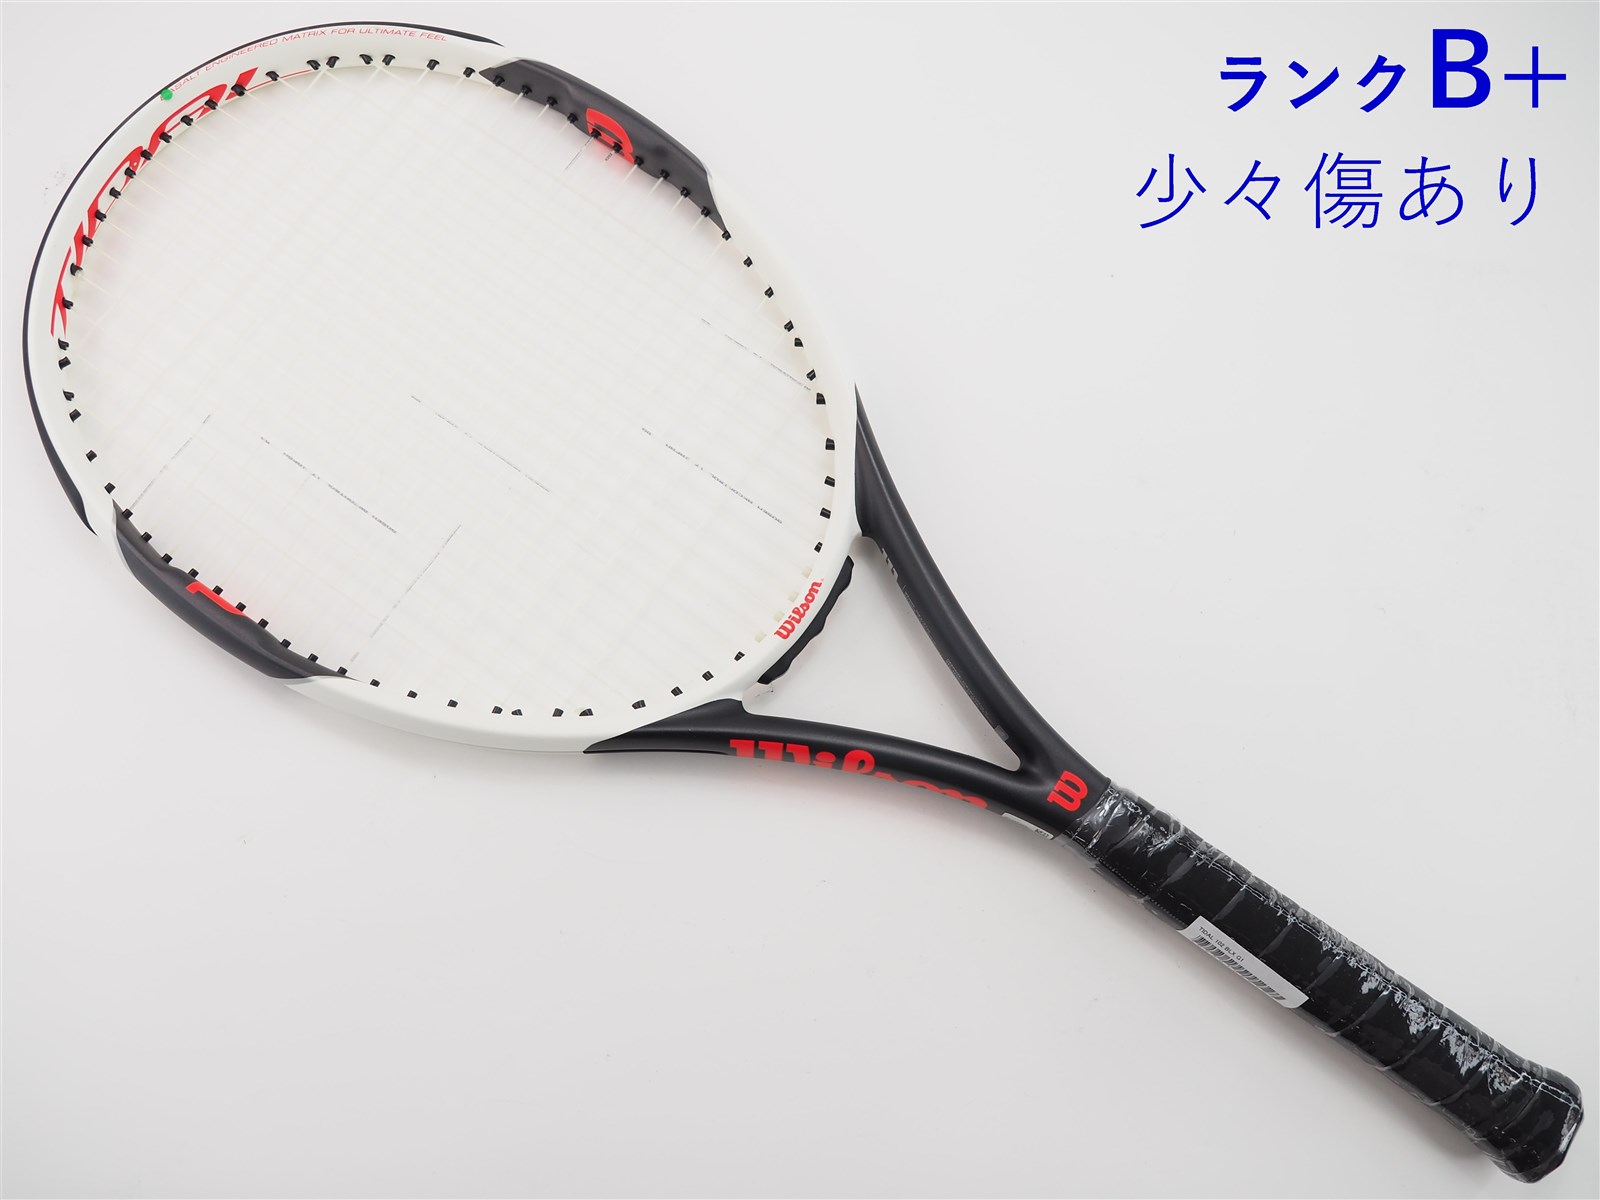 テニスラケット ウィルソン タイダル 102 BLX (G1)WILSON TIDAL 102